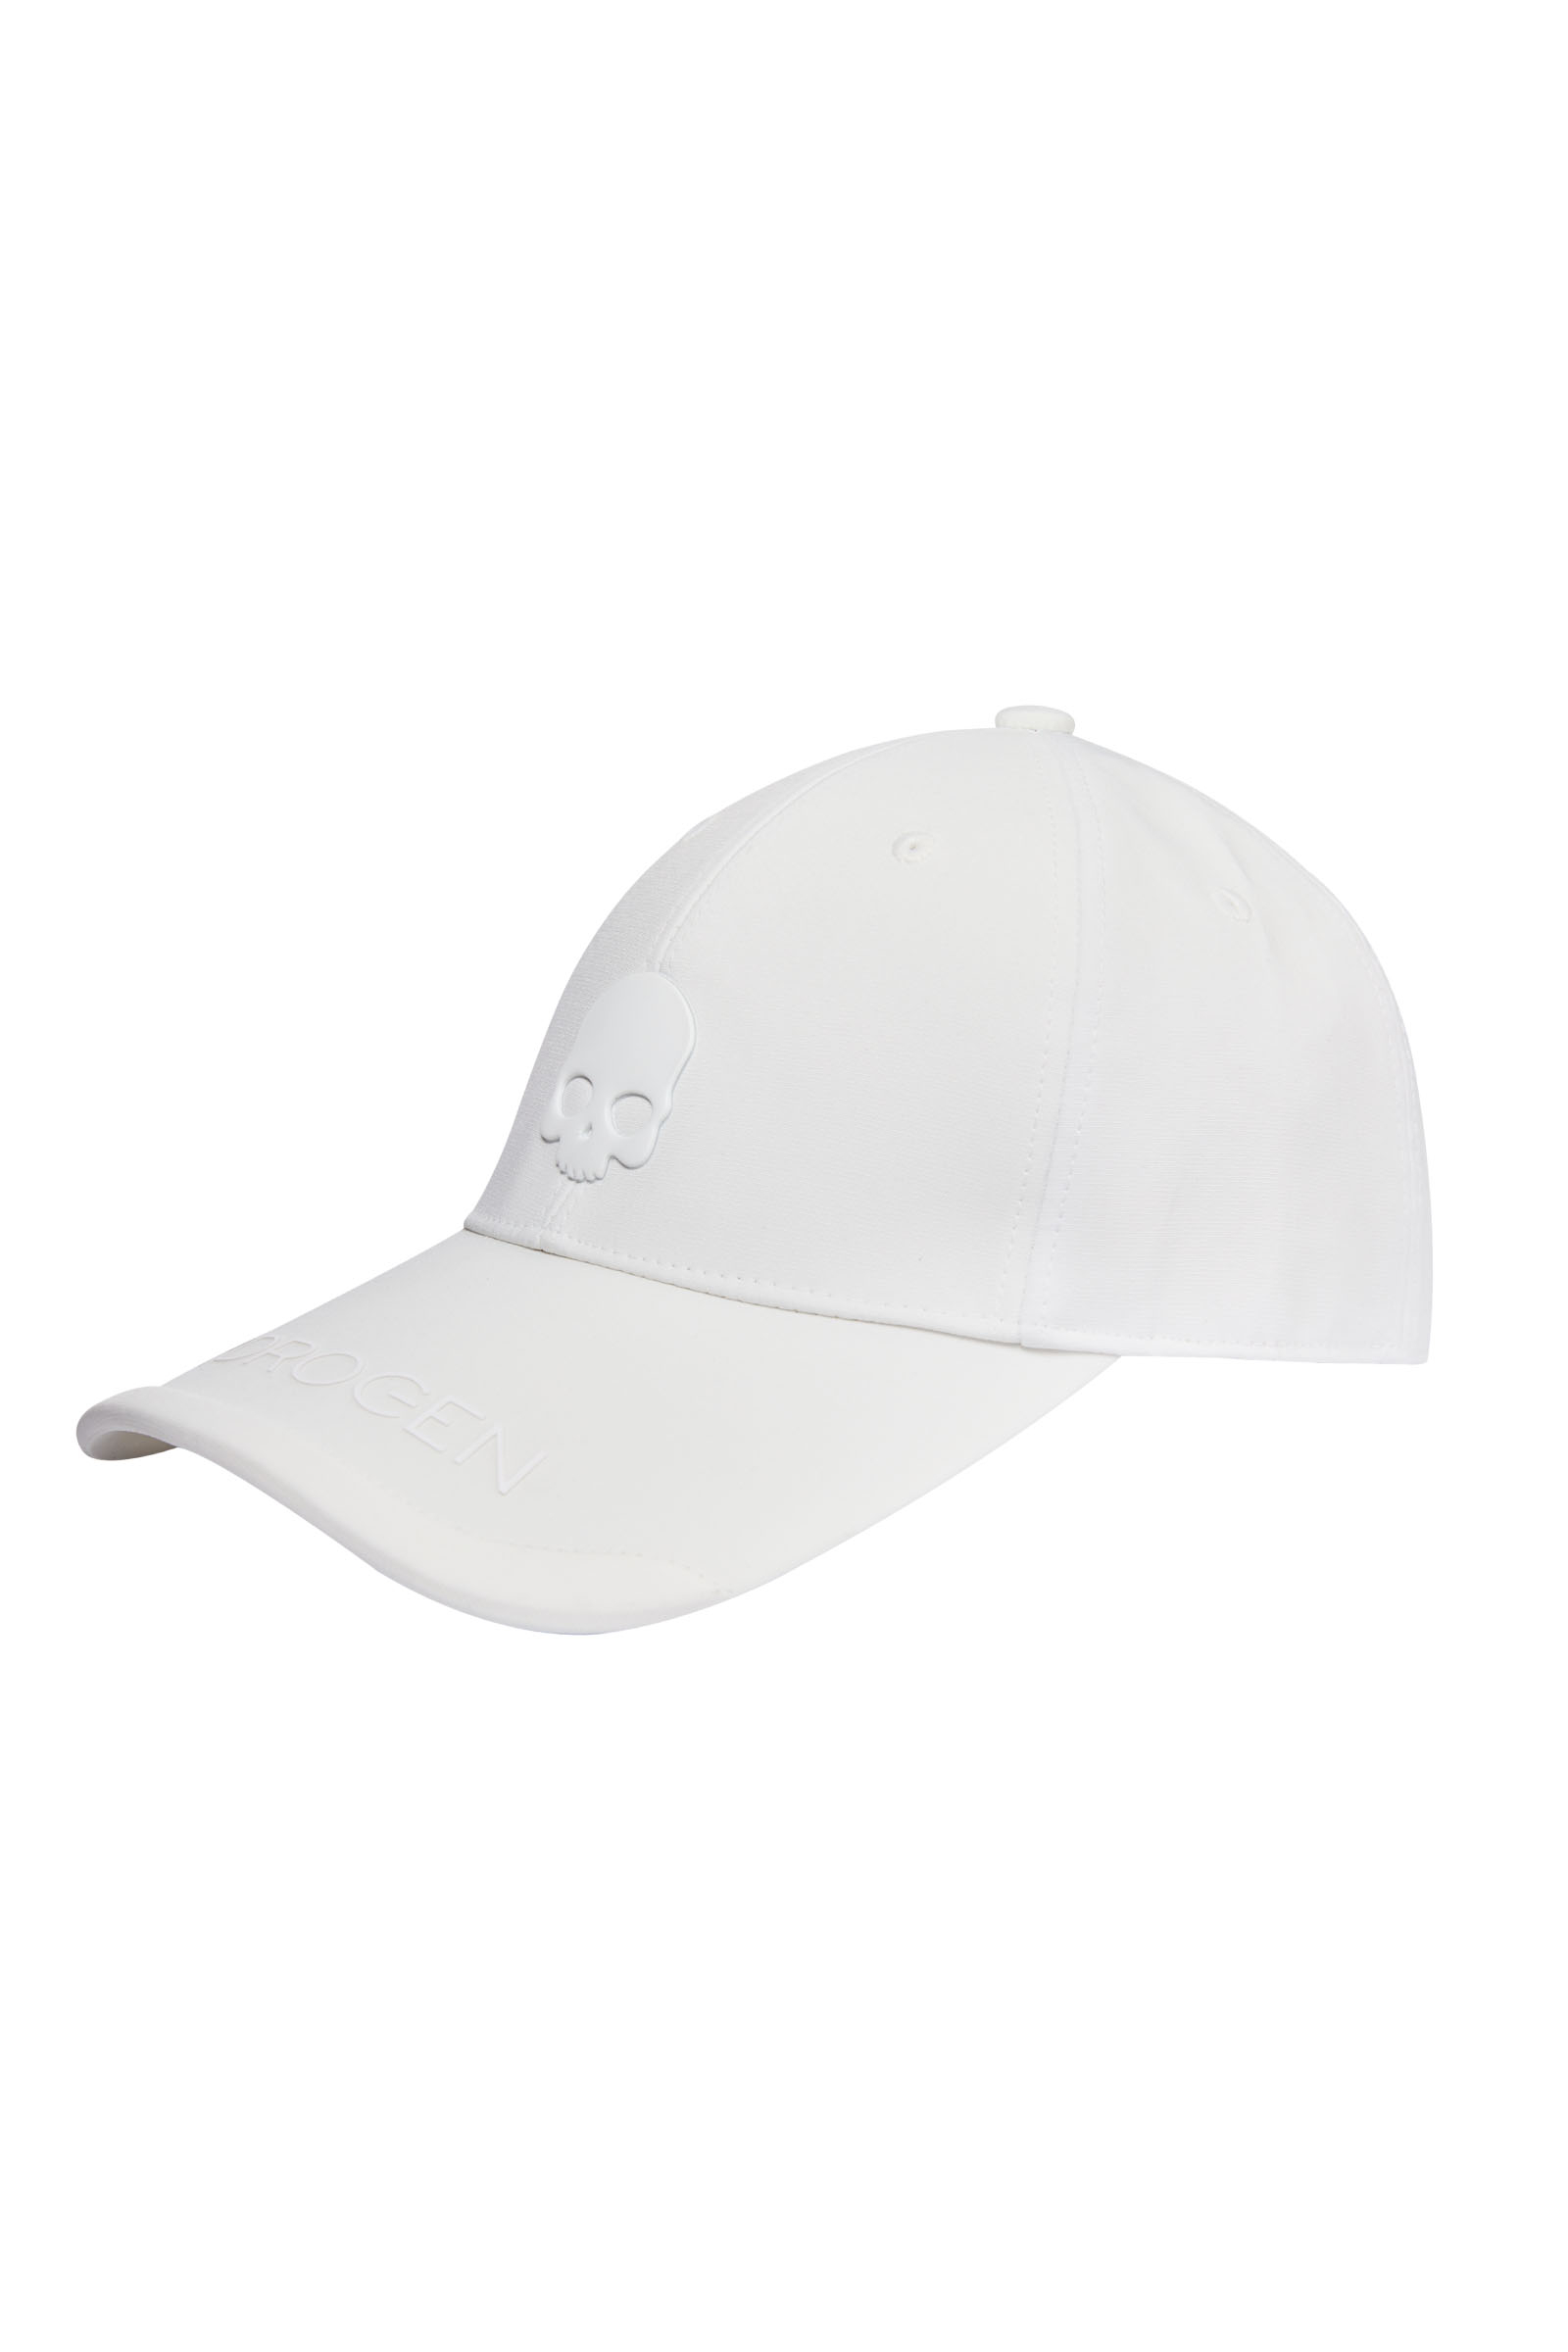 UNISEX BALL CAP - WHITE - Hydrogen - Luxury Sportwear